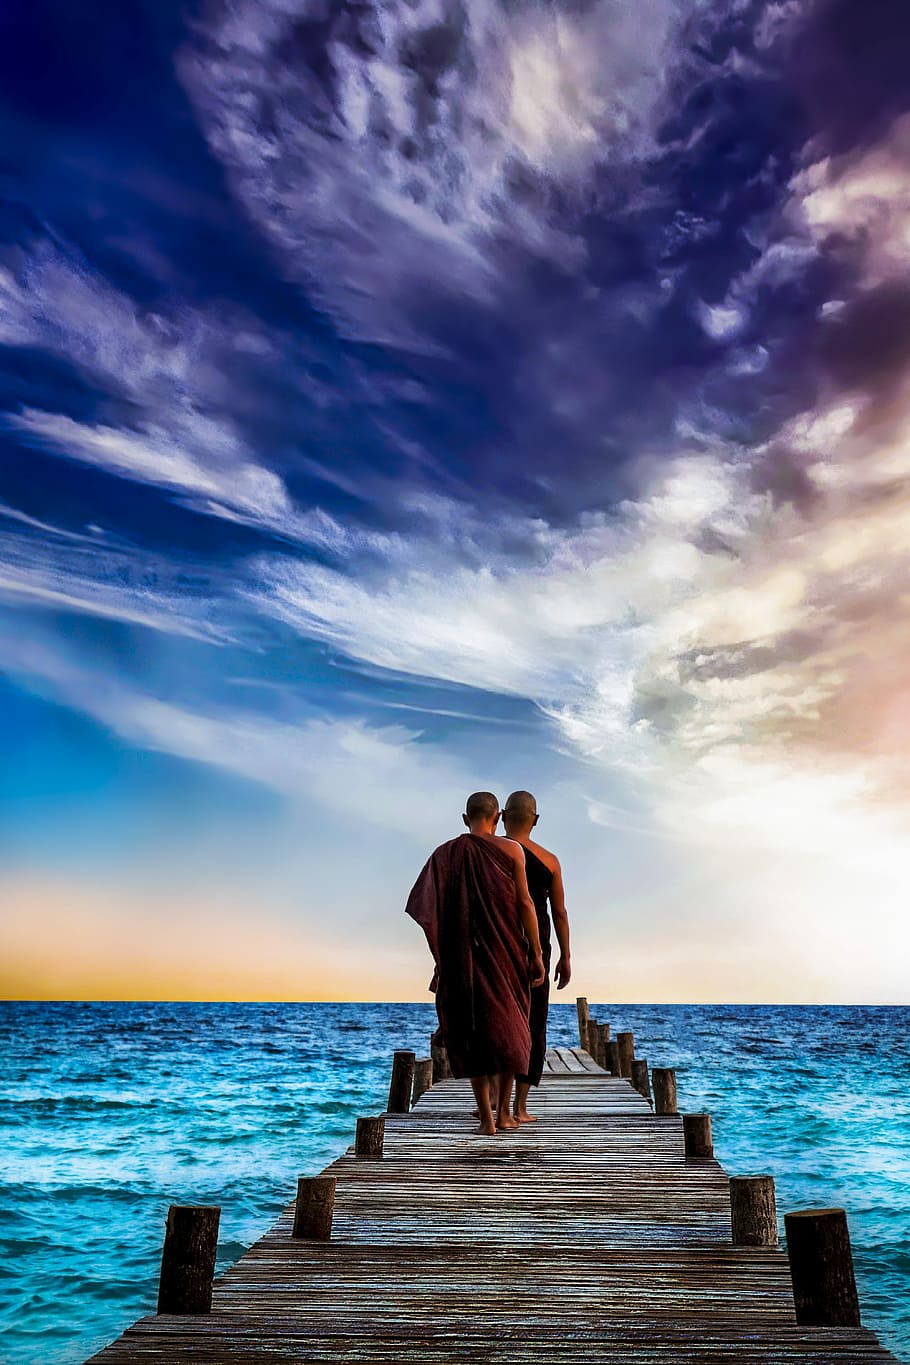 two, monks, walking, wooden, dock, water, sunset, sea, sky, ocean